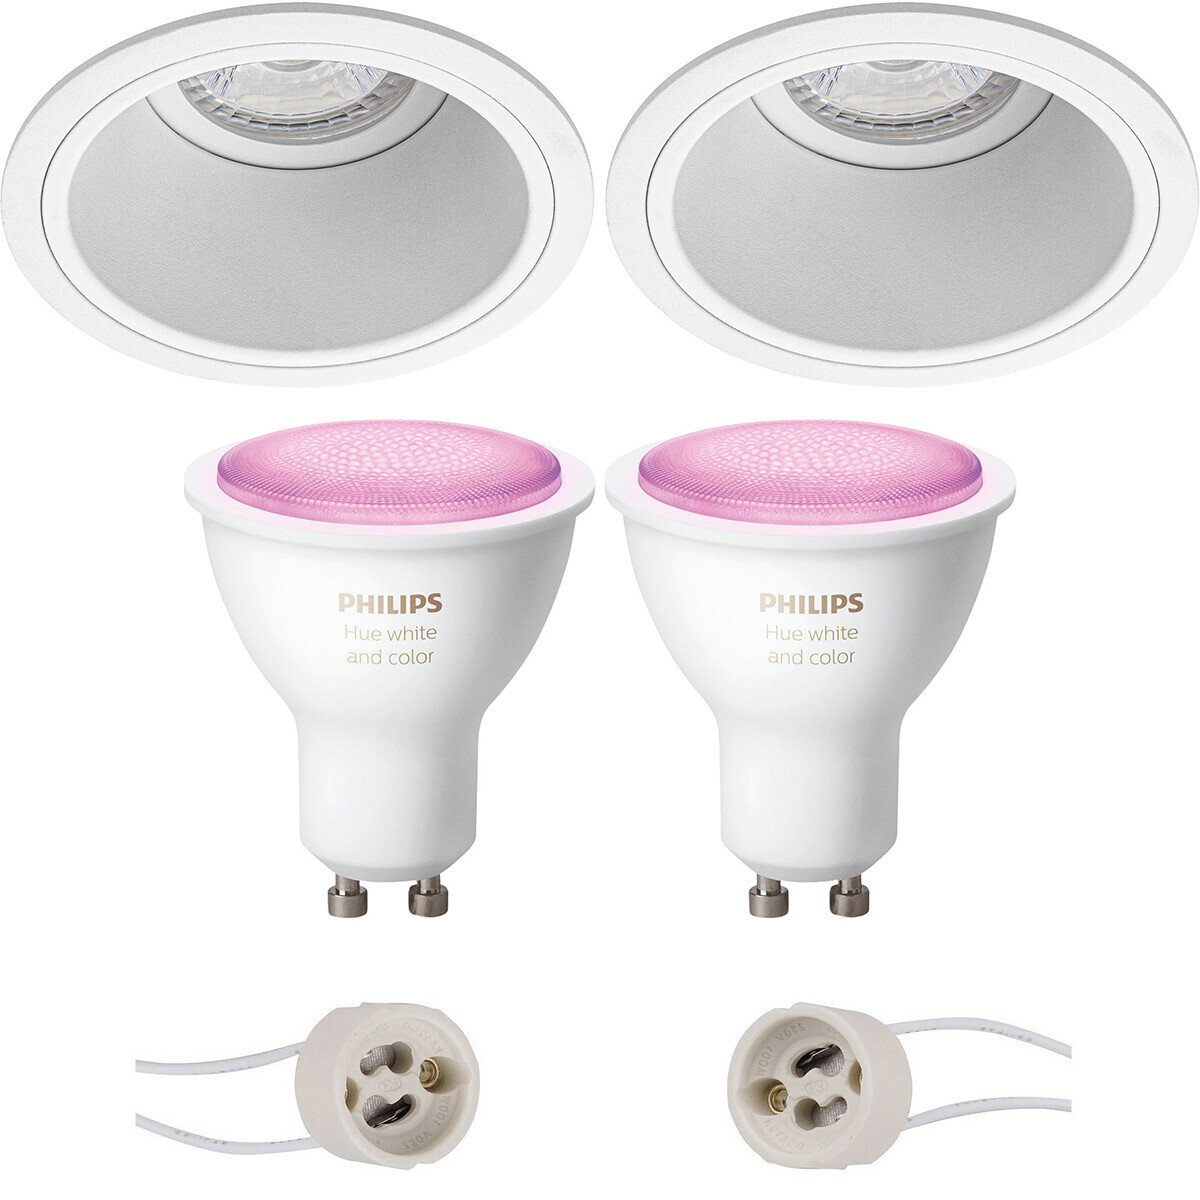 Pragmi Minko Pro Inbouw Rond Mat Wit Verdiept Ø90mm Philips Hue LED Spot Set GU10 White and Color Am